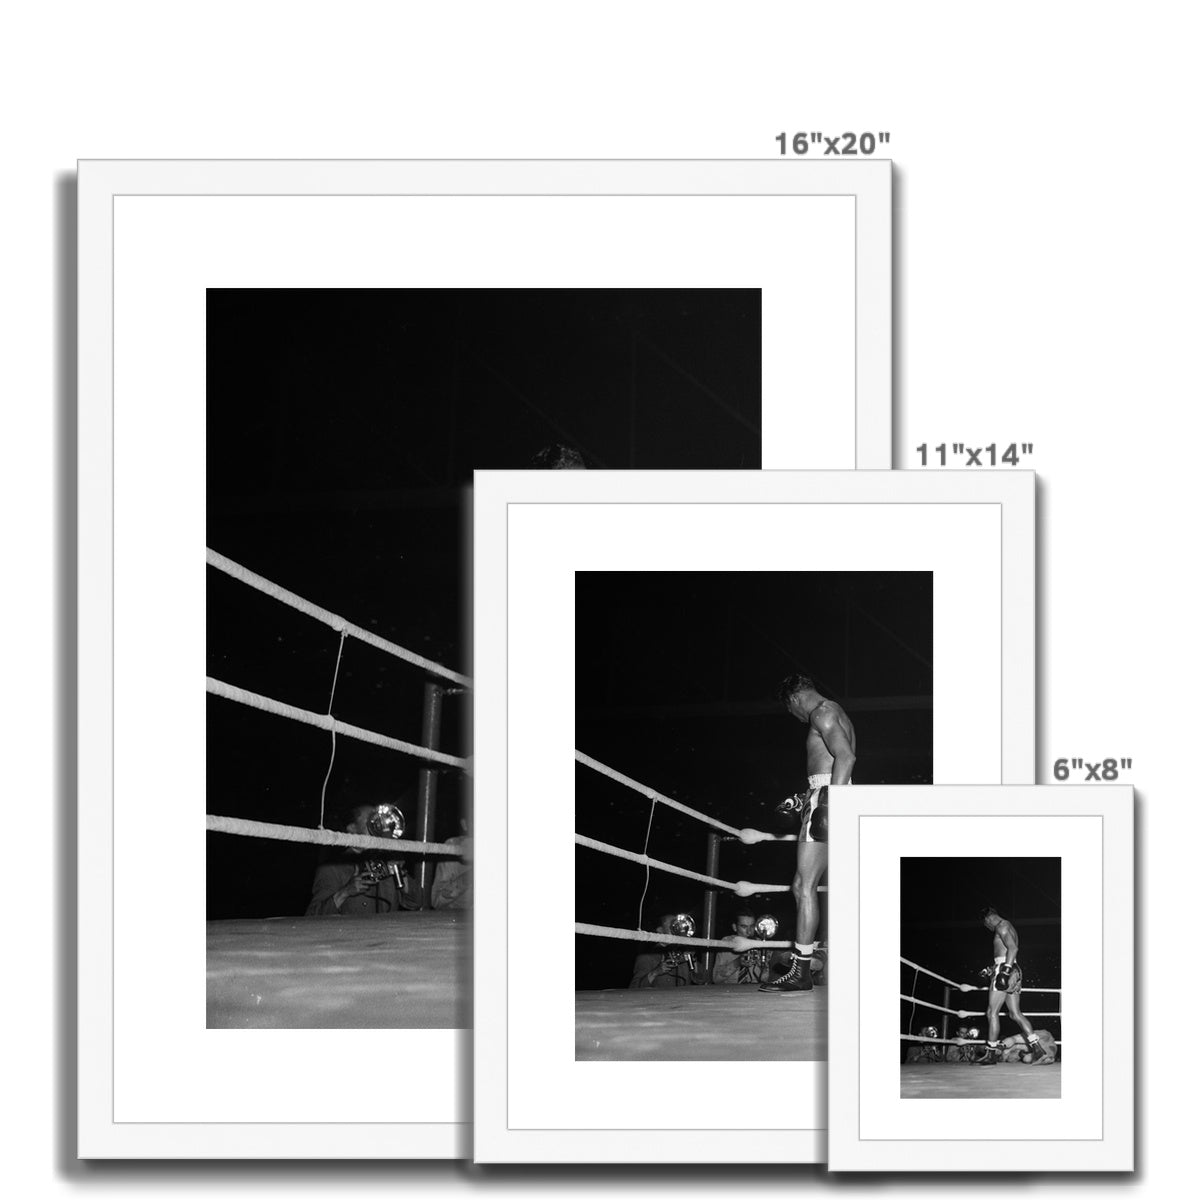 Boxkampf zwischen Sugar Ray Robinson und Jean Wanès im Hallenstadion Zürich Framed & Mounted Print